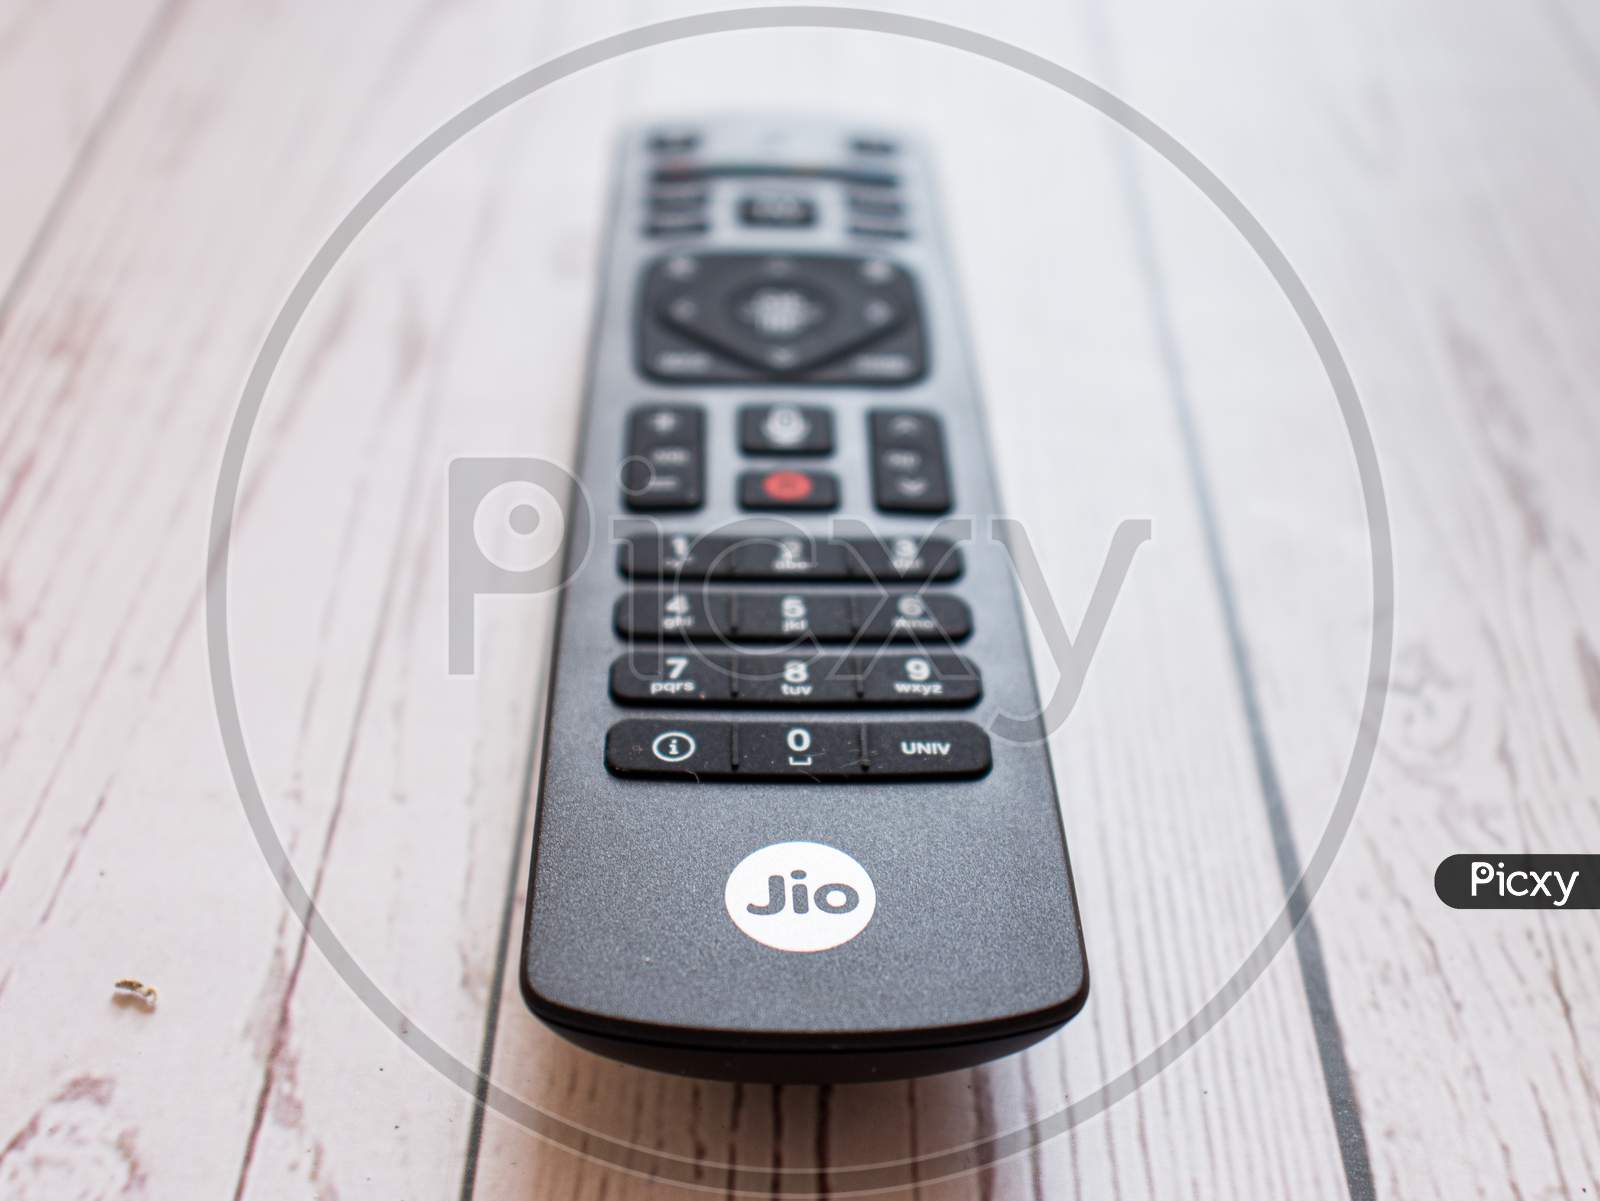 Assam, india - April 28, 2020 : Jio fibre/tv set top box 4k.